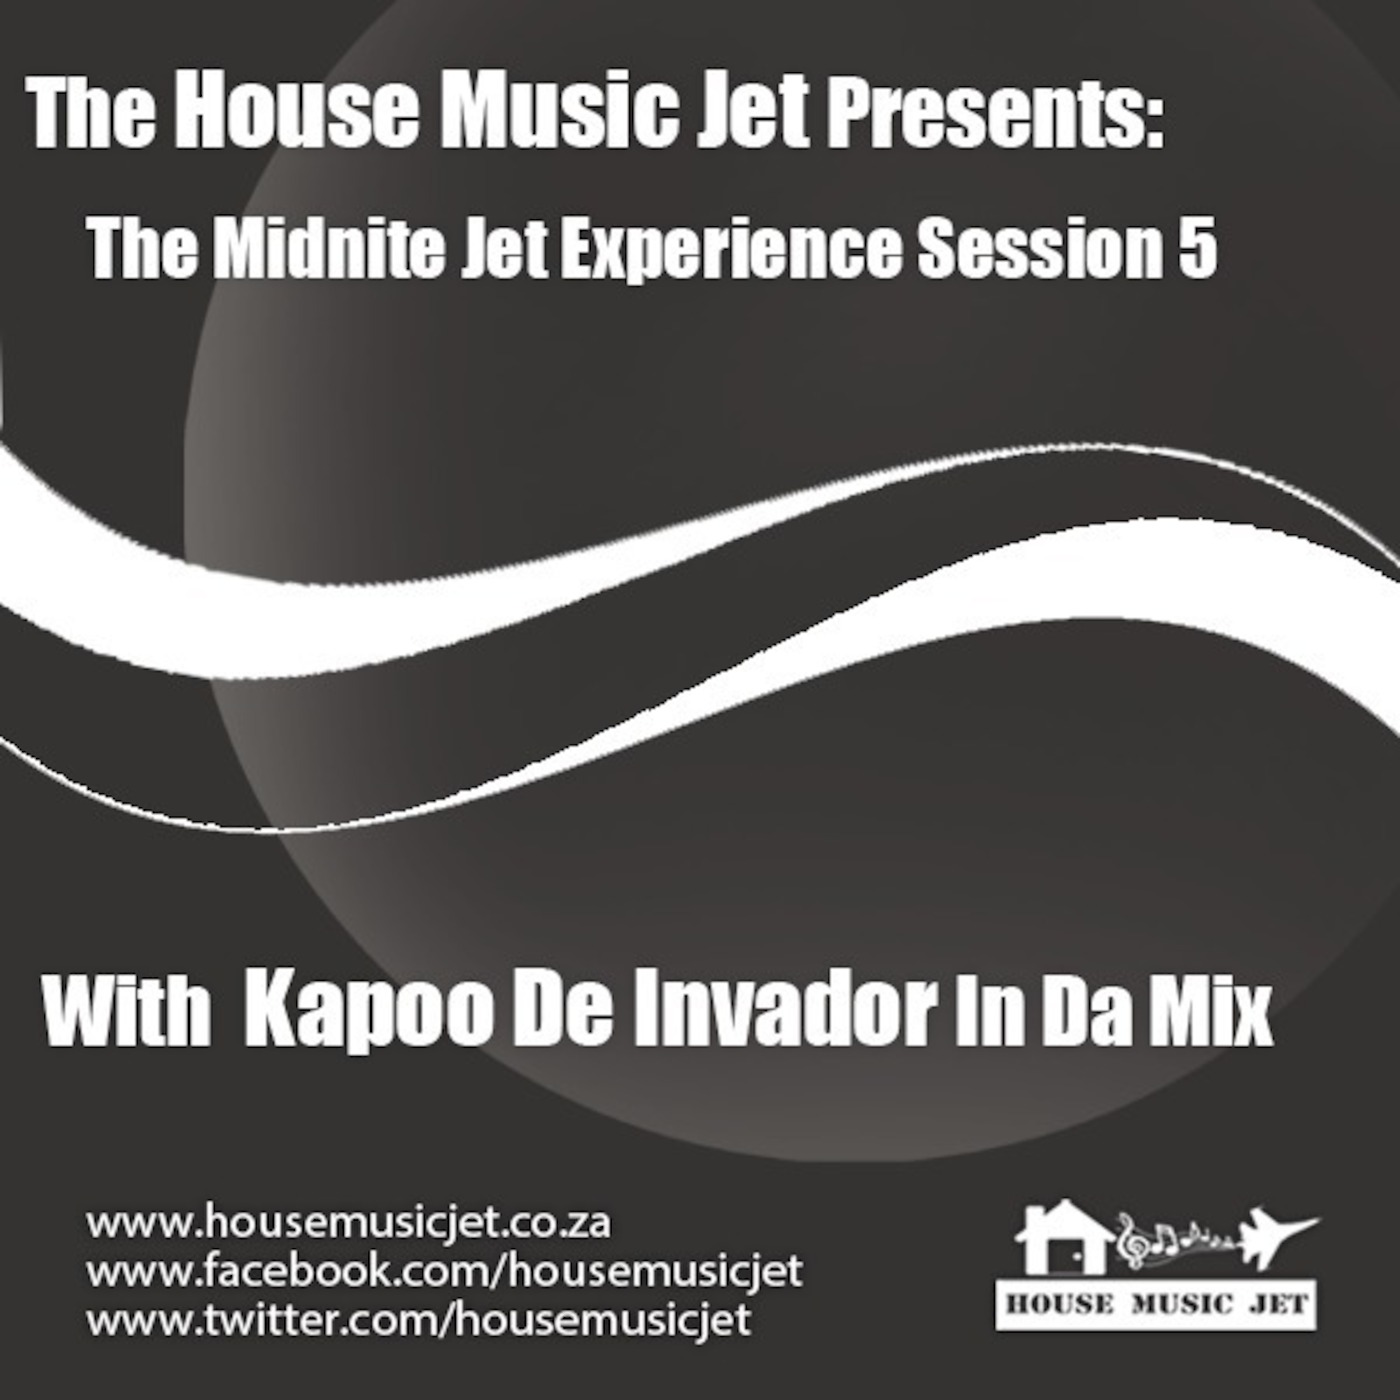 Kapoo De Invador In Da Mix- Midnite Jet Experience Session 5